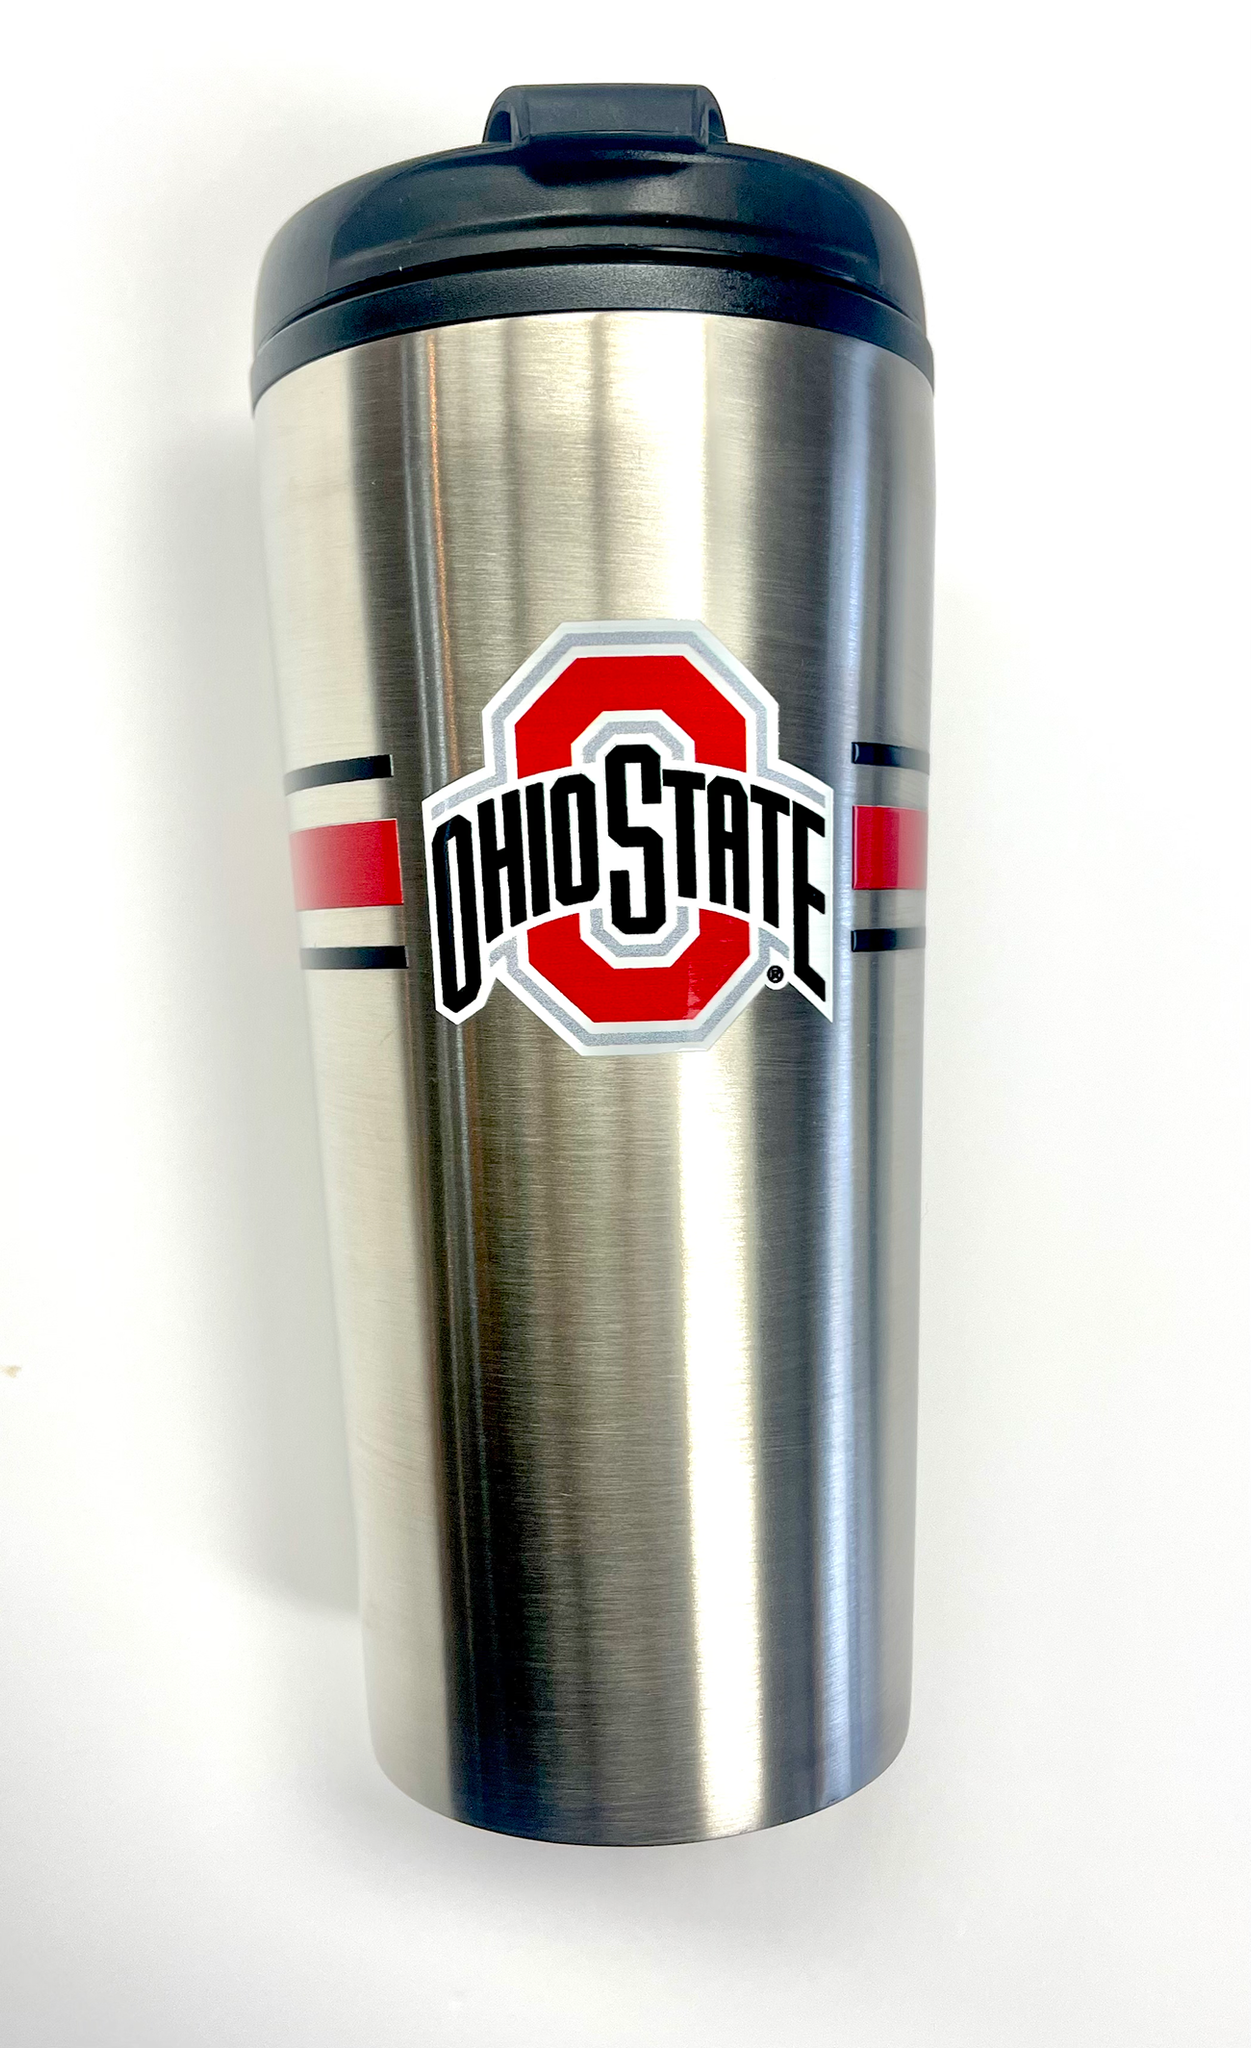 16 oz. Ohio State University travel mug